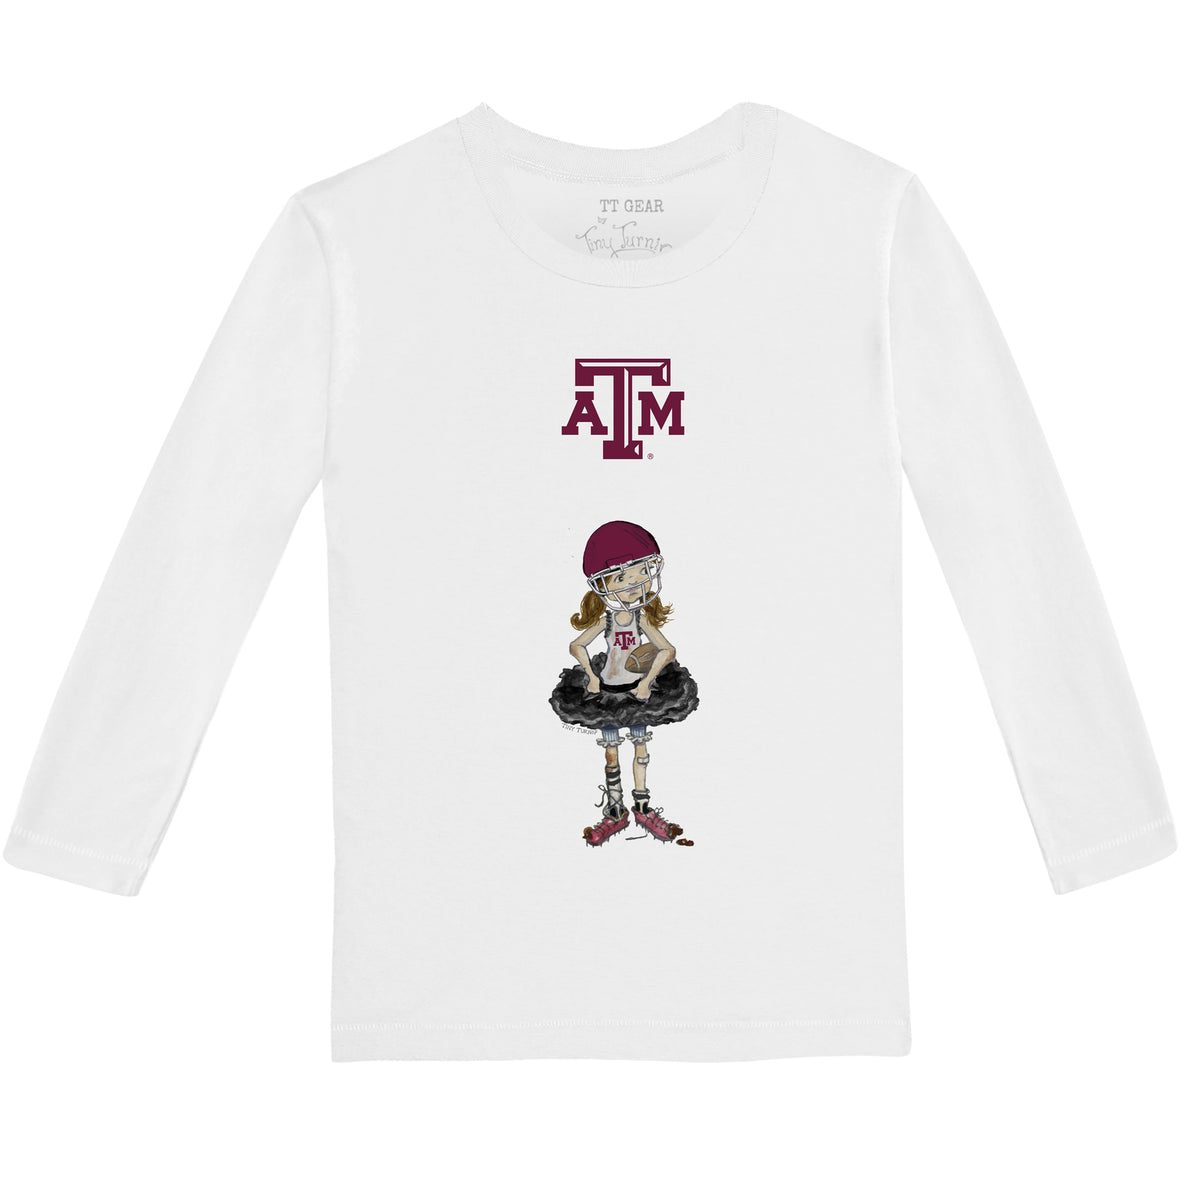 Texas A&M Aggies Babes Long-Sleeve Tee Shirt